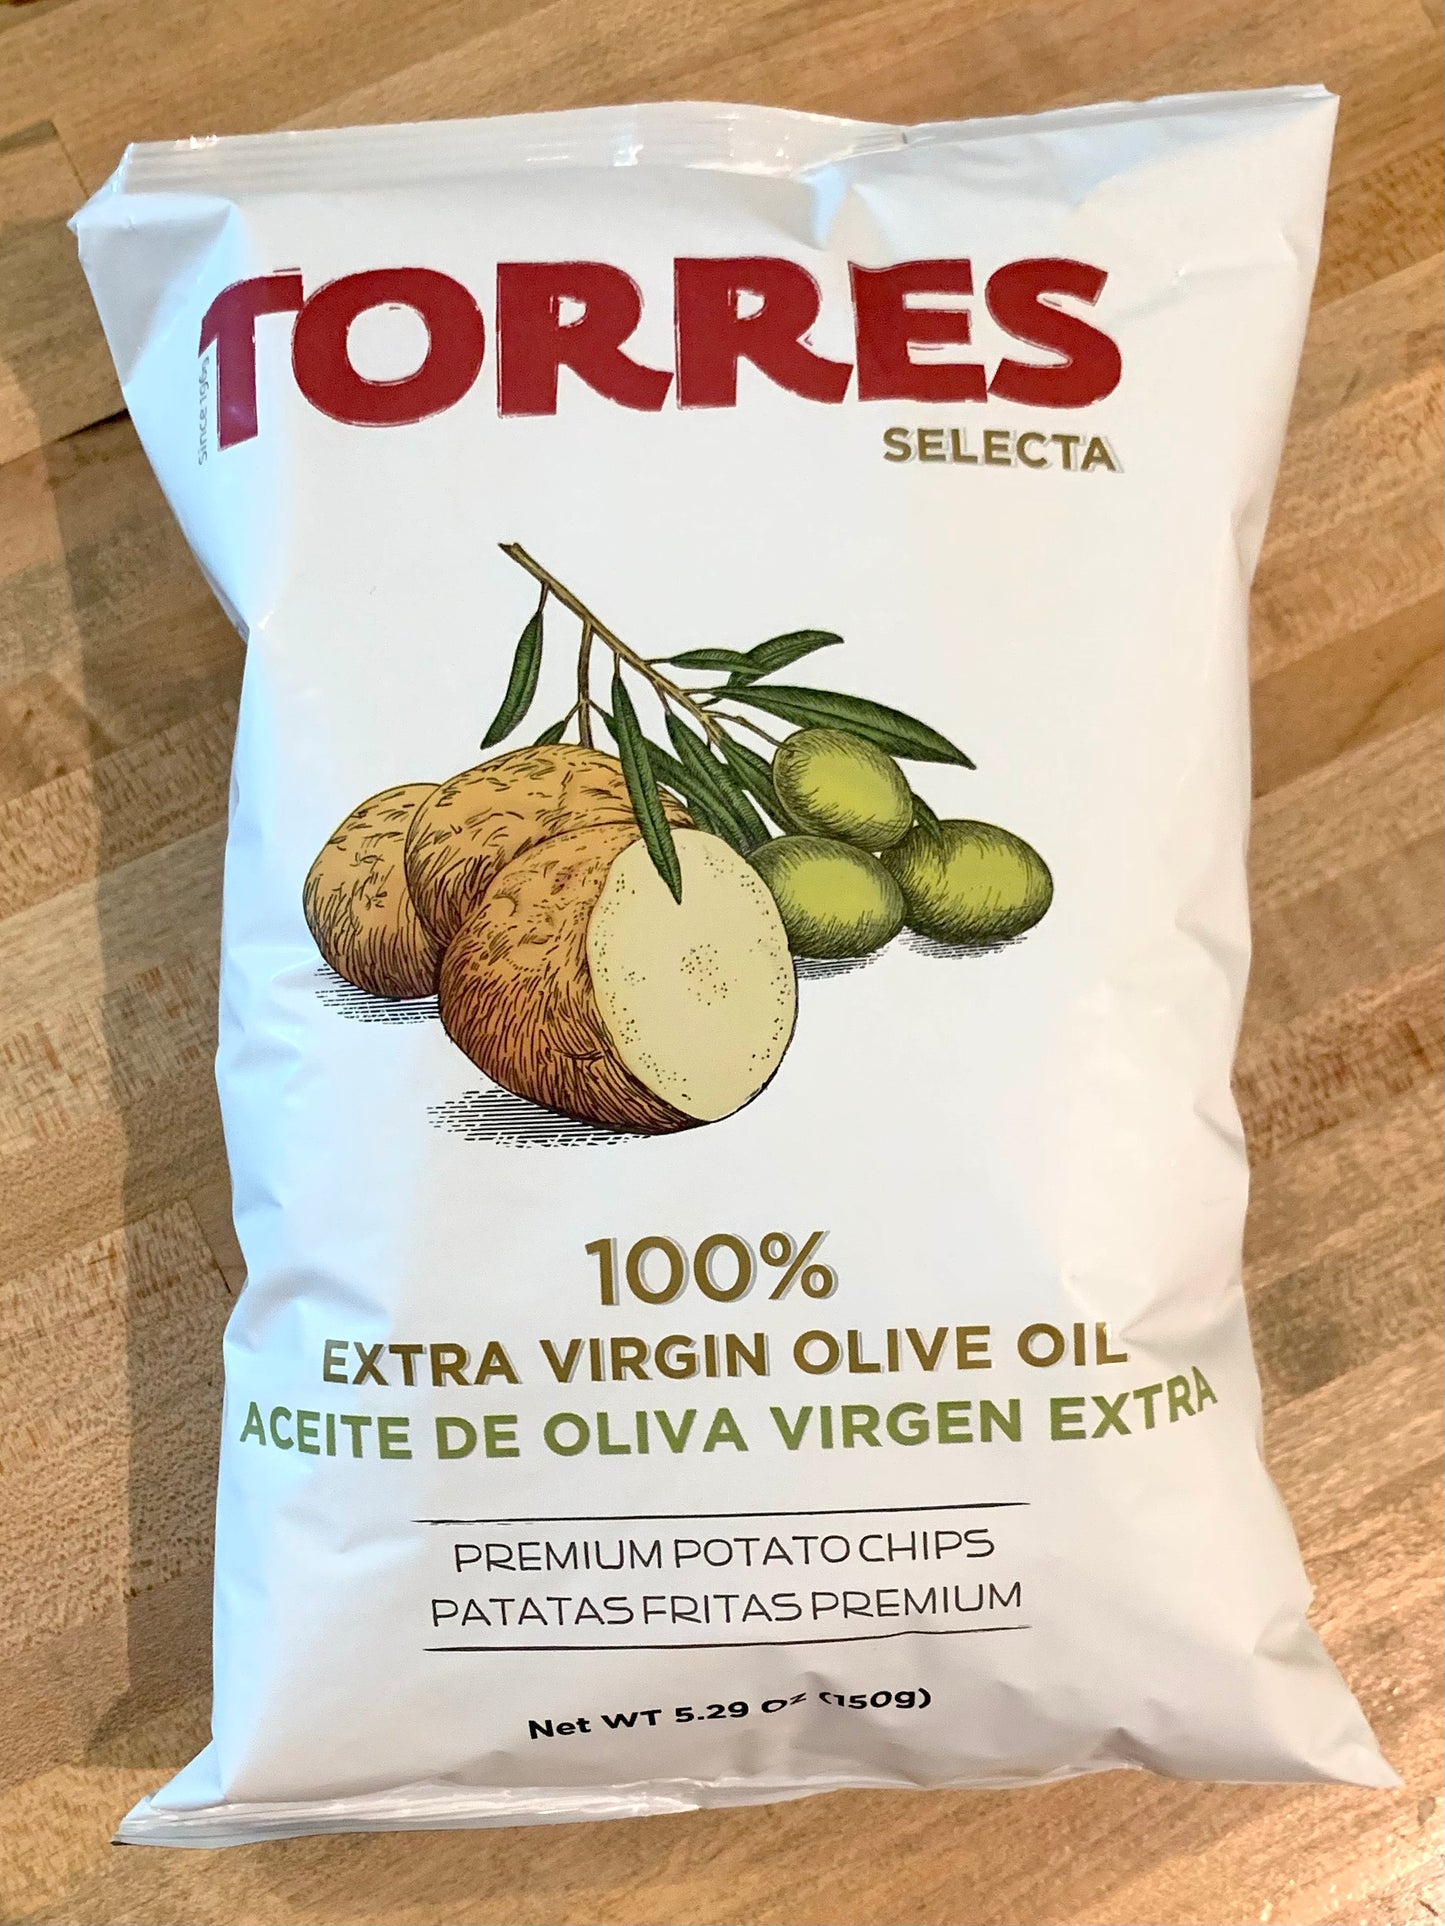 Extra Virgin Olive Oil Potato Chips, Torres Selecta, Spain (150g Large Bag)